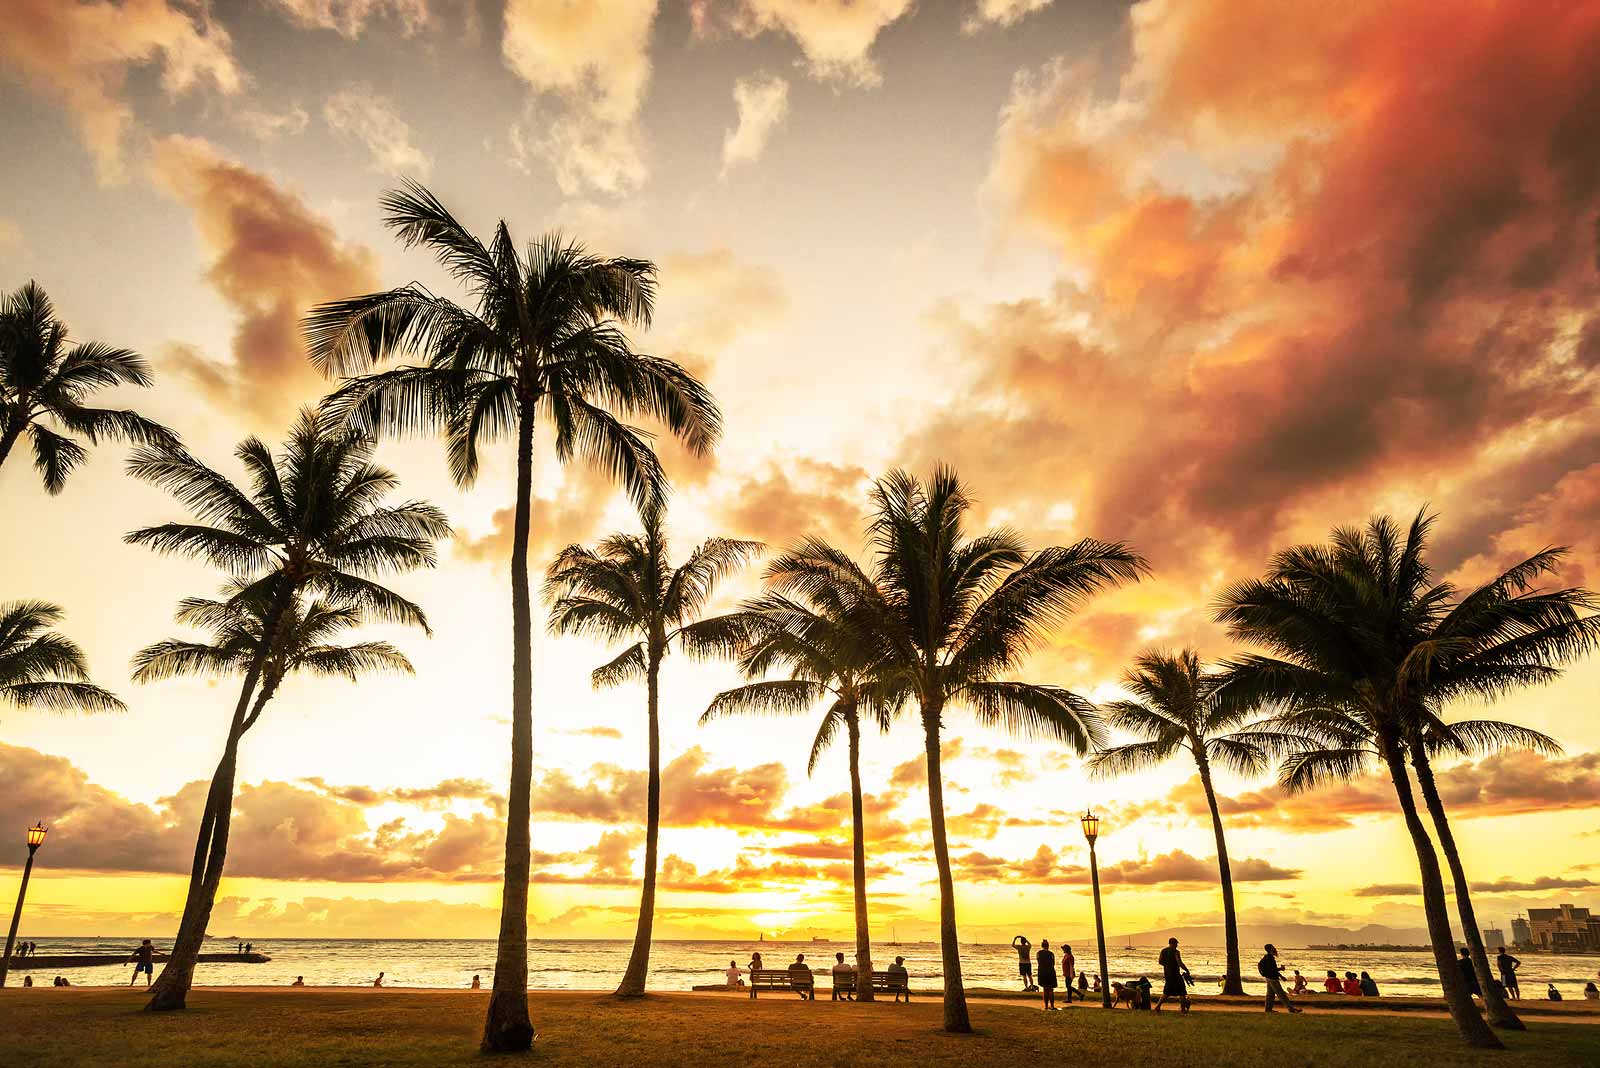 Explore Honolulu Beaches in a Rental Car